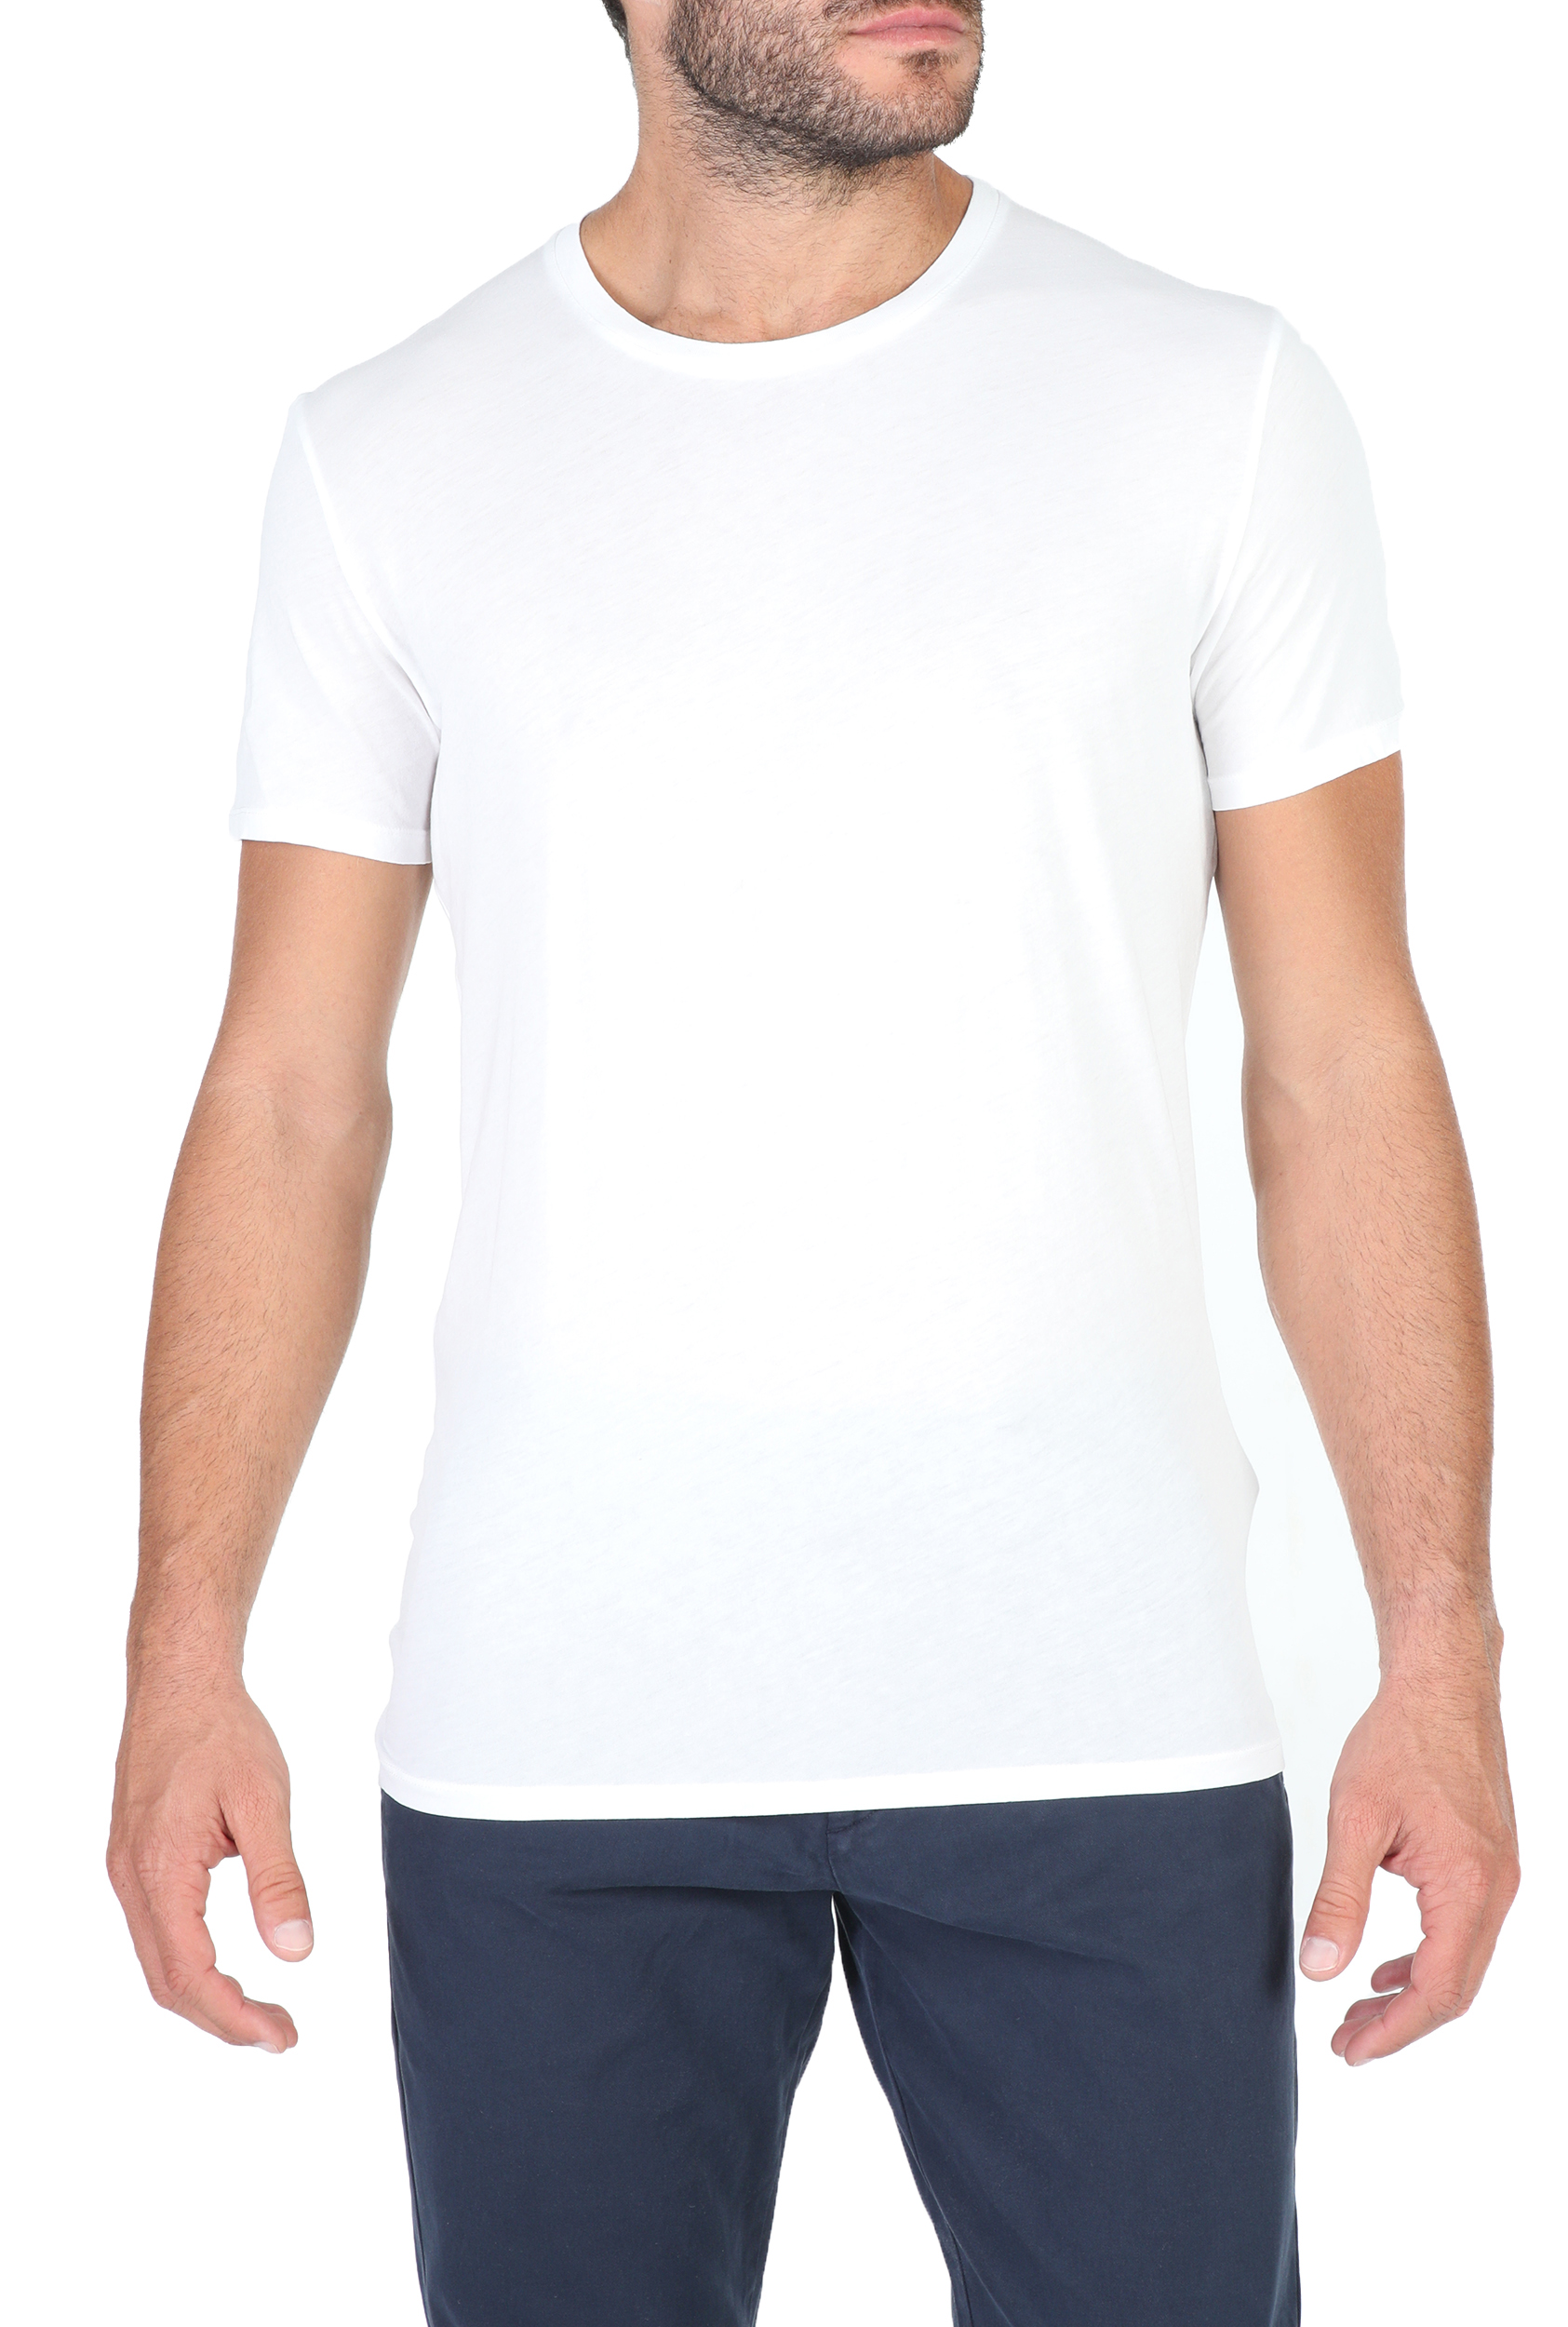 Ανδρικά/Ρούχα/Μπλούζες/Κοντομάνικες AMERICAN VINTAGE - Ανδρική κοντομάνικη μπλουζα AMERICAN VINTAGE λευκή